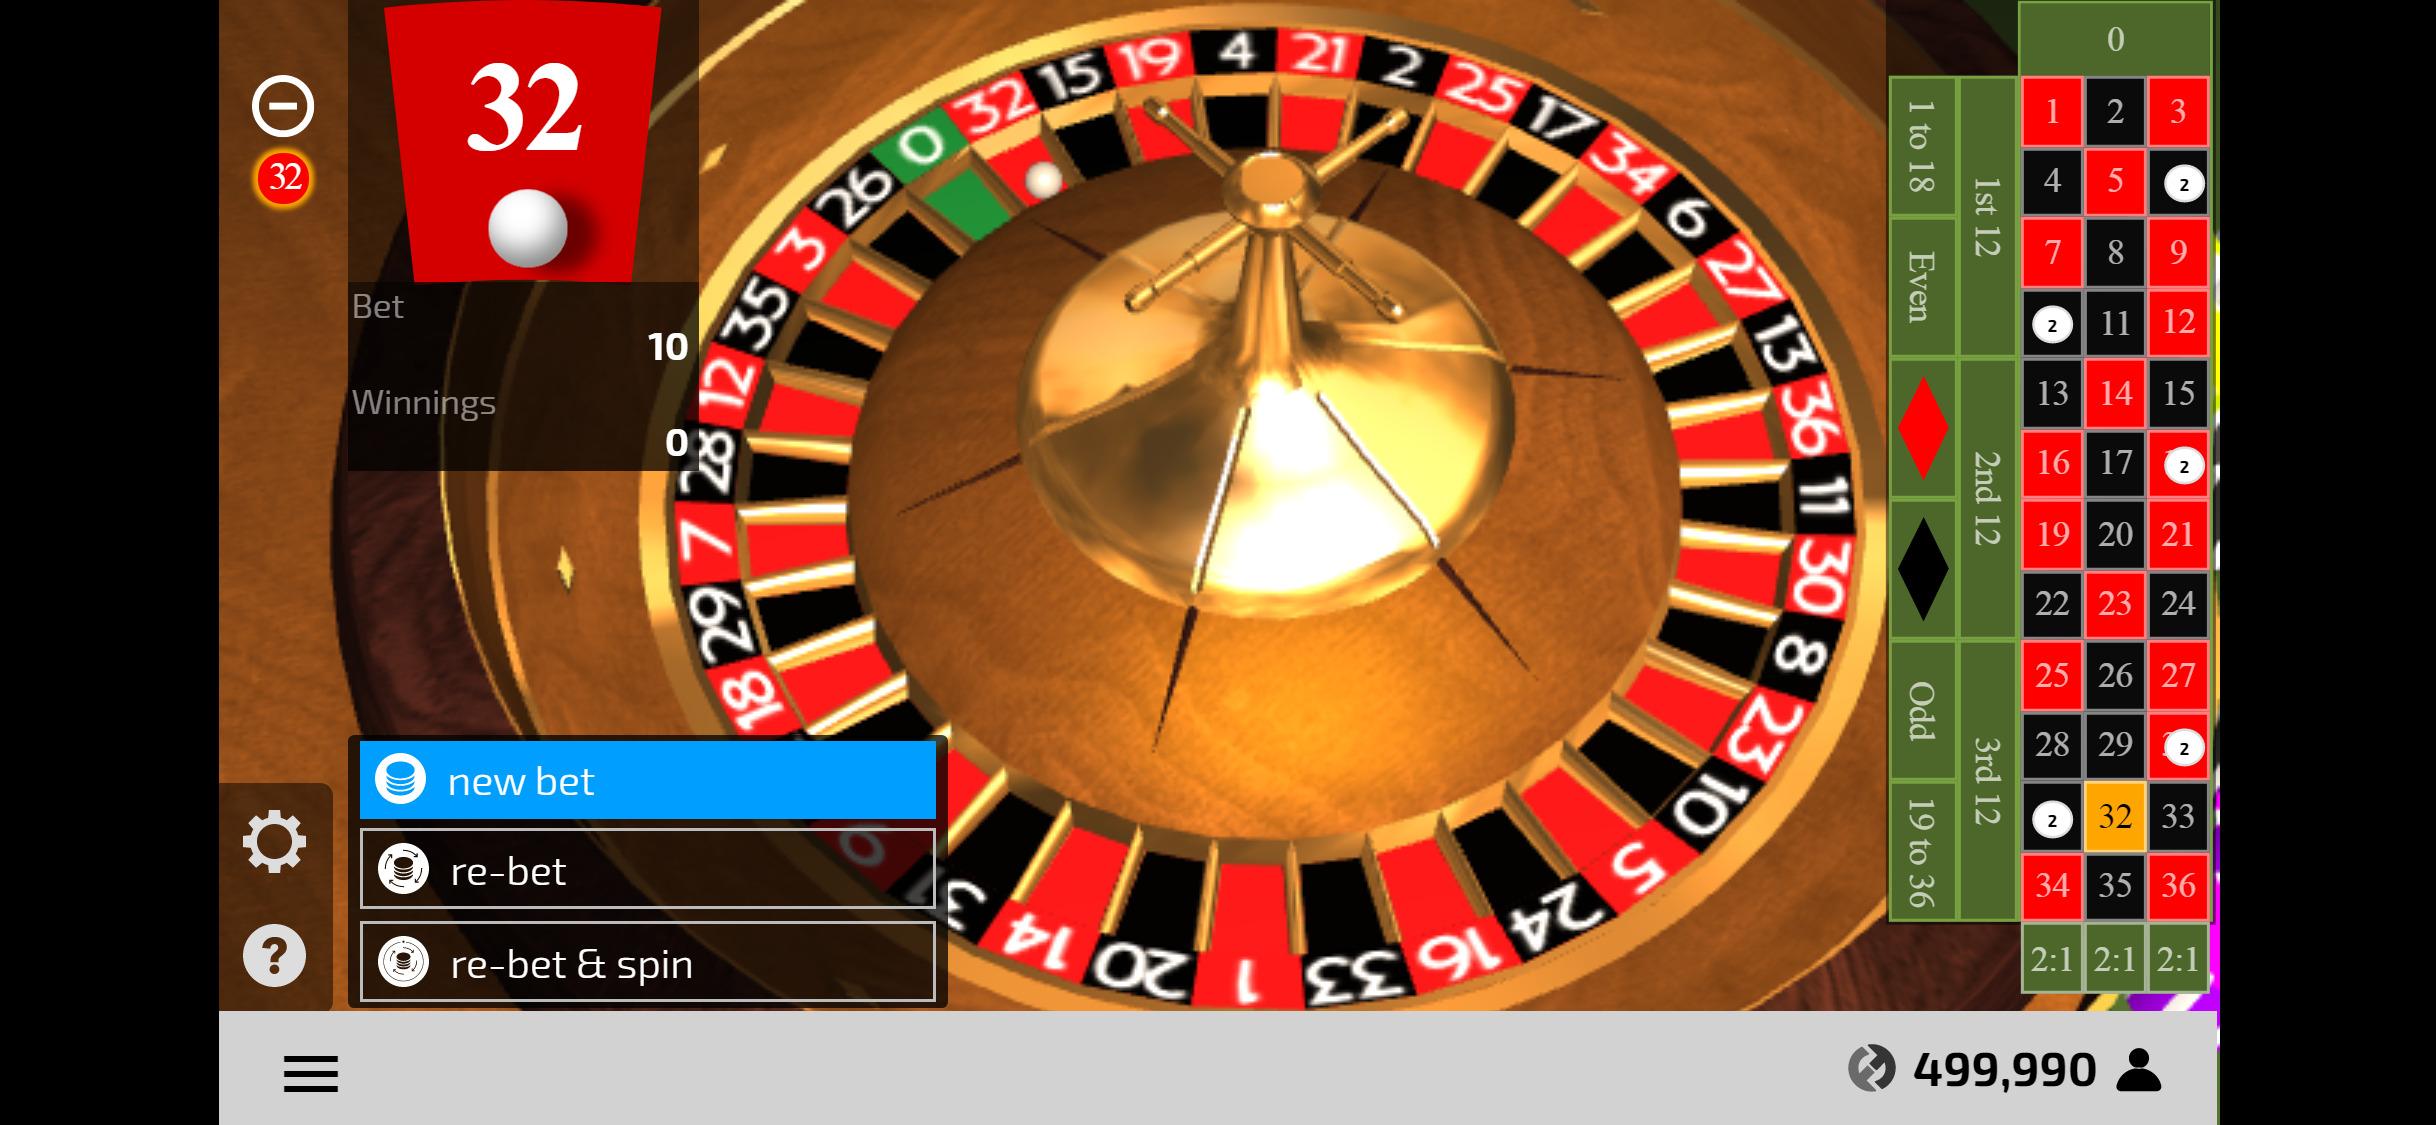 CryptoCasino Mobile Casino Games Review